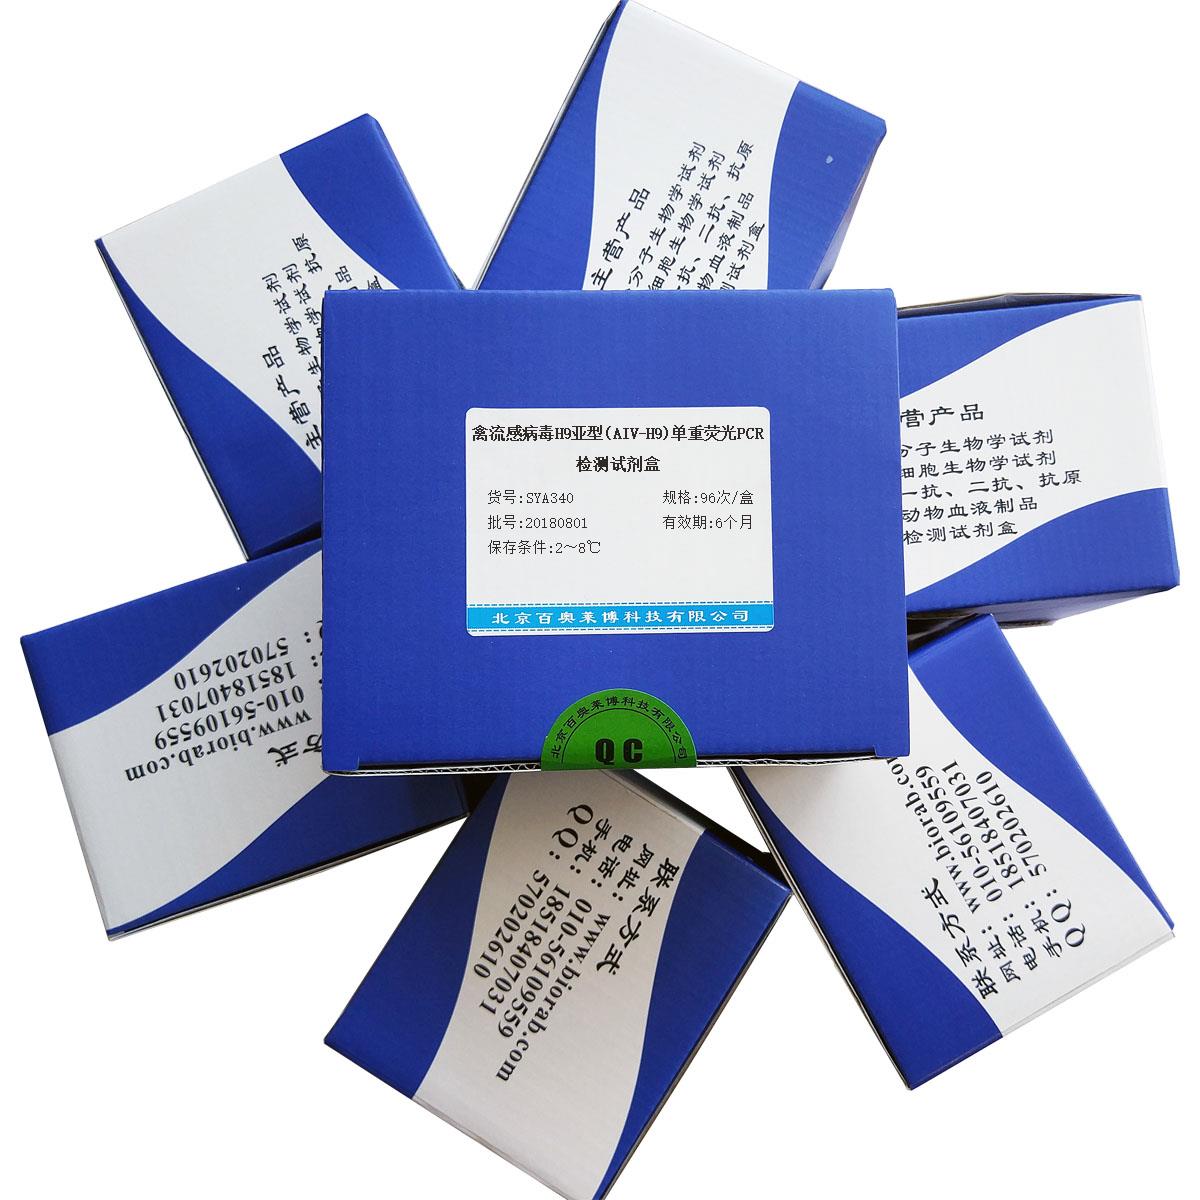 禽流感病毒H9亚型(AIV-H9)单重荧光PCR检测试剂盒